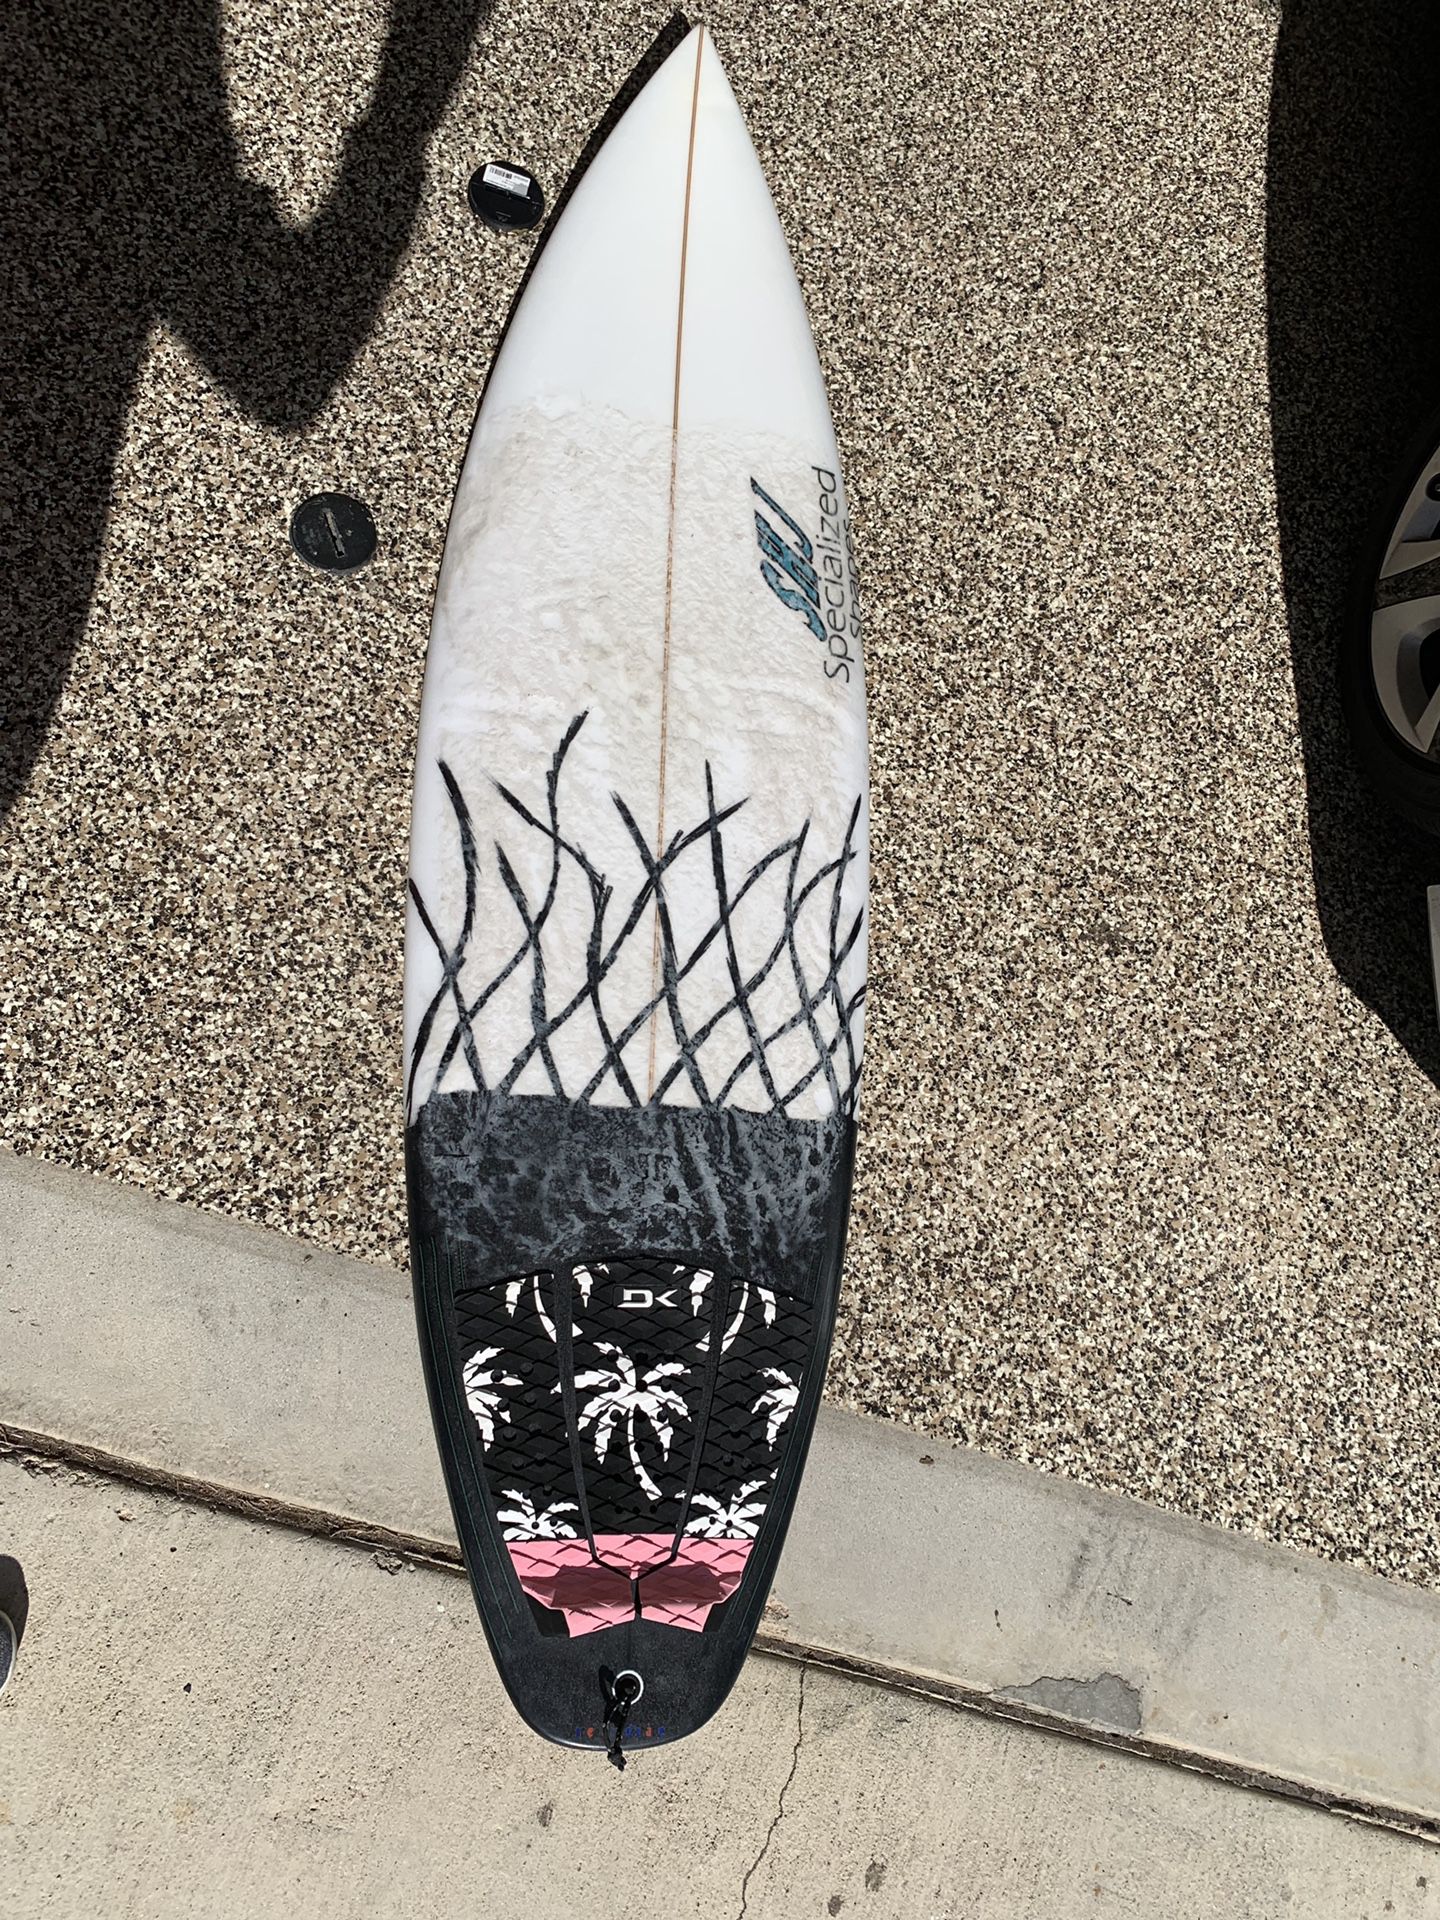 SHJ dog bone 5’10” surfboard